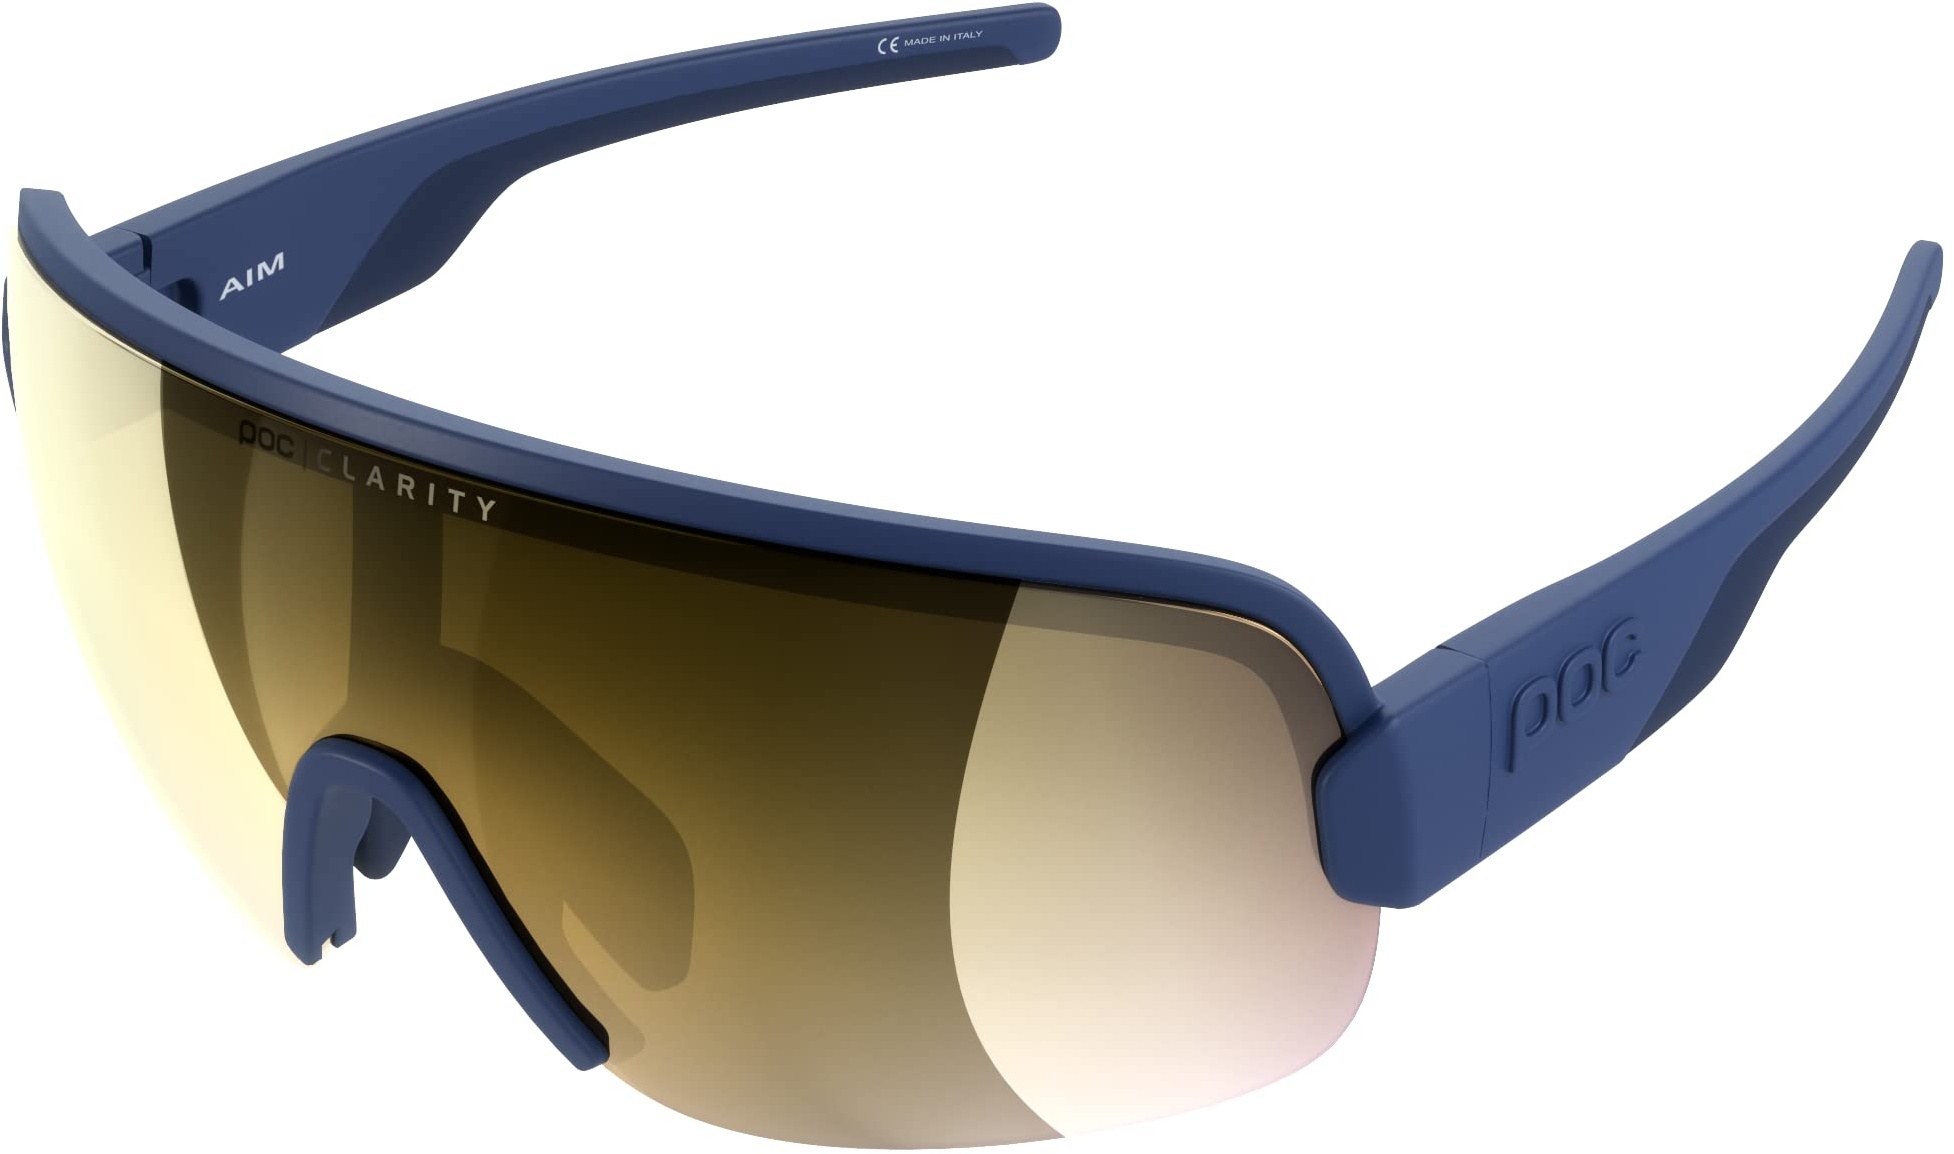 POC AIM Sonnenbrille - Sportbrille mit extra großen Brillenglas für maximales Sichtfeld für Straßen und Off-Road-Touren, Lead Blue